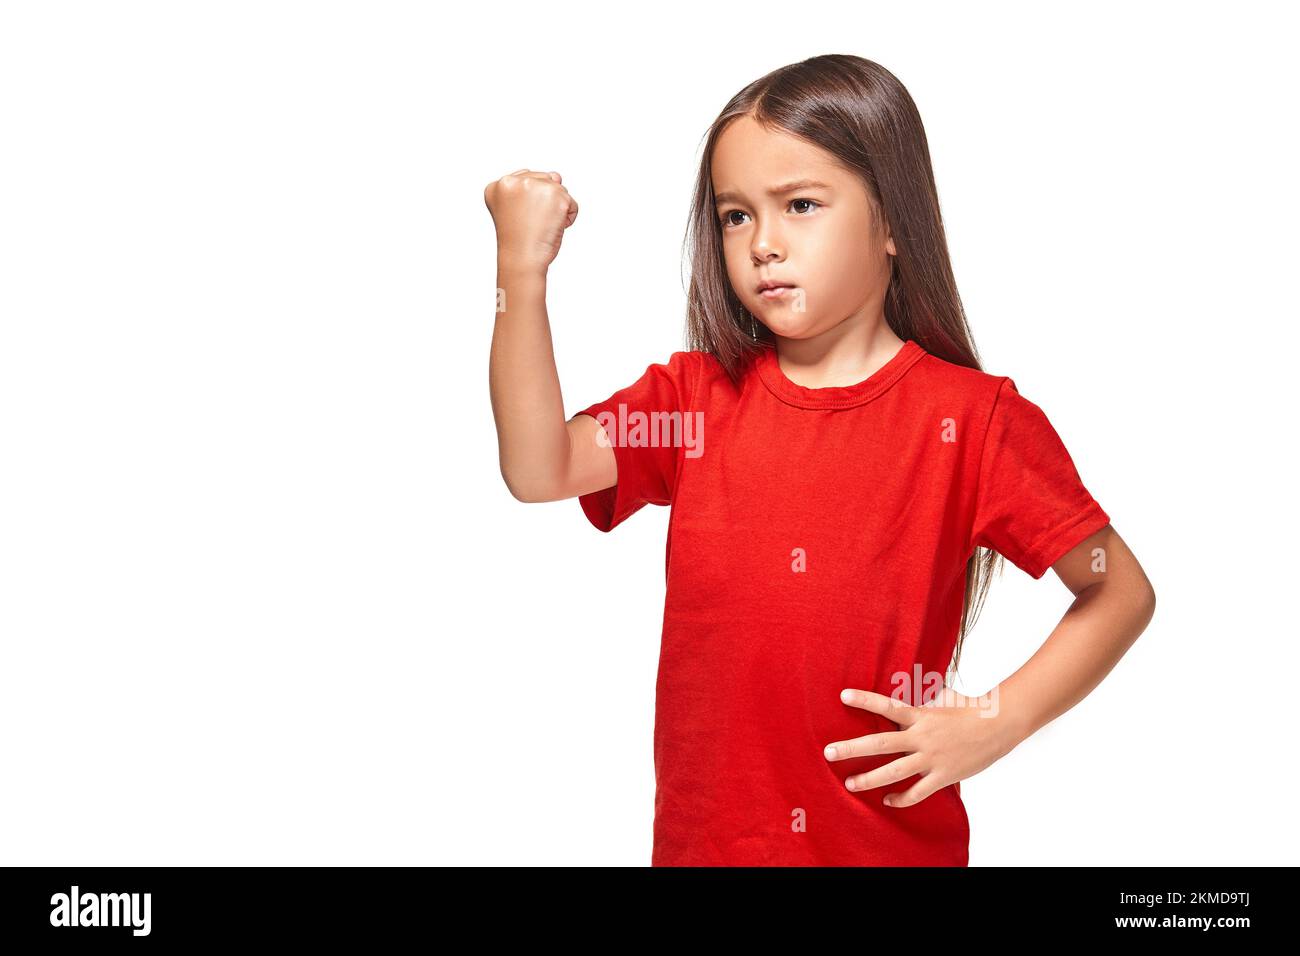 Hermosa niña en camiseta roja sacude su puño Fotografía de stock